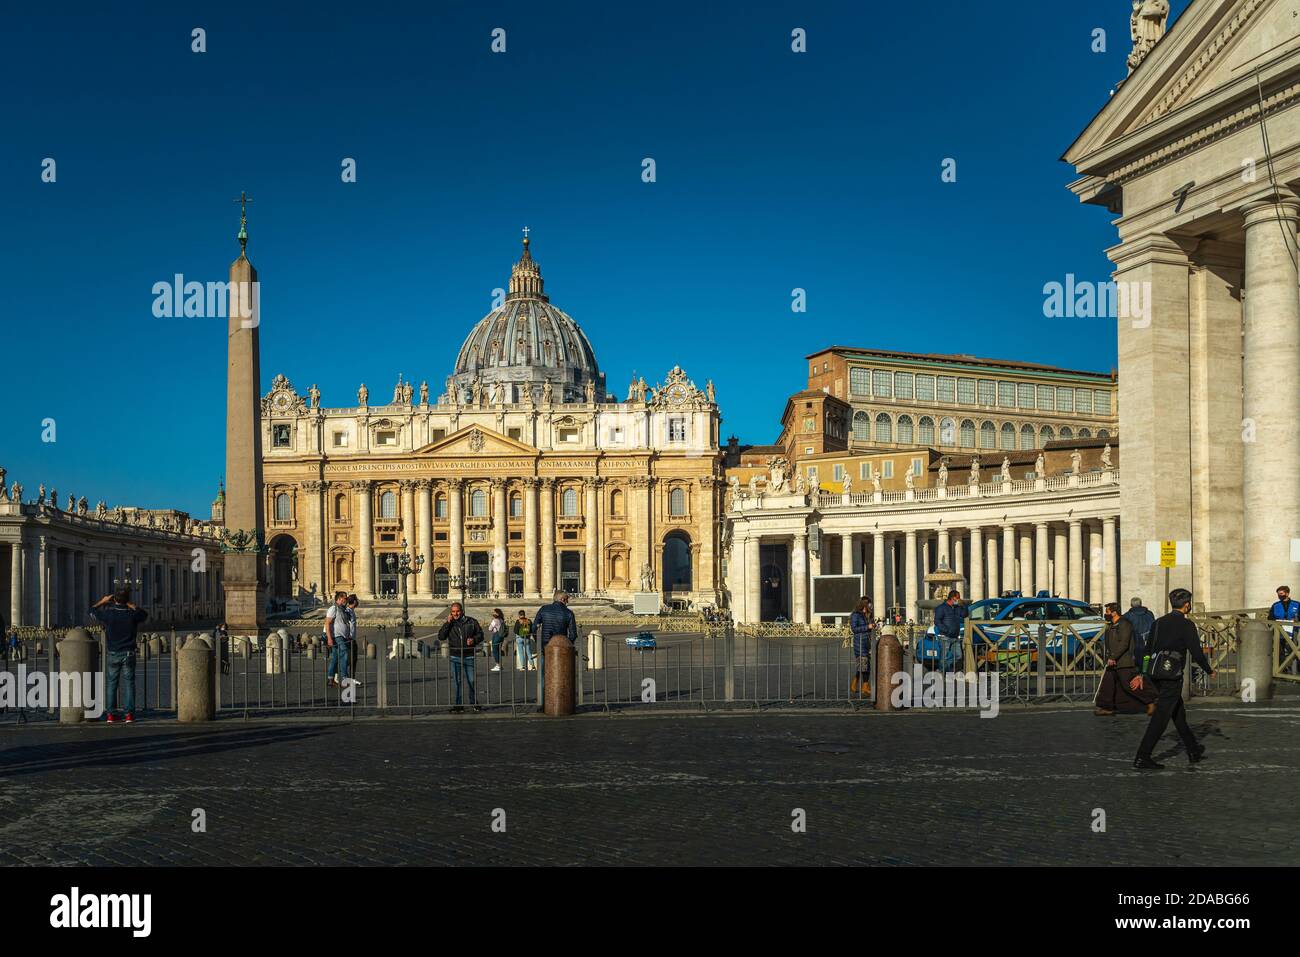 Die Basilika San Pietro und die Piazza San Pietro mit ihrer Kolonnade. Vatikanstadt, Rom, Italien, Europa Stockfoto